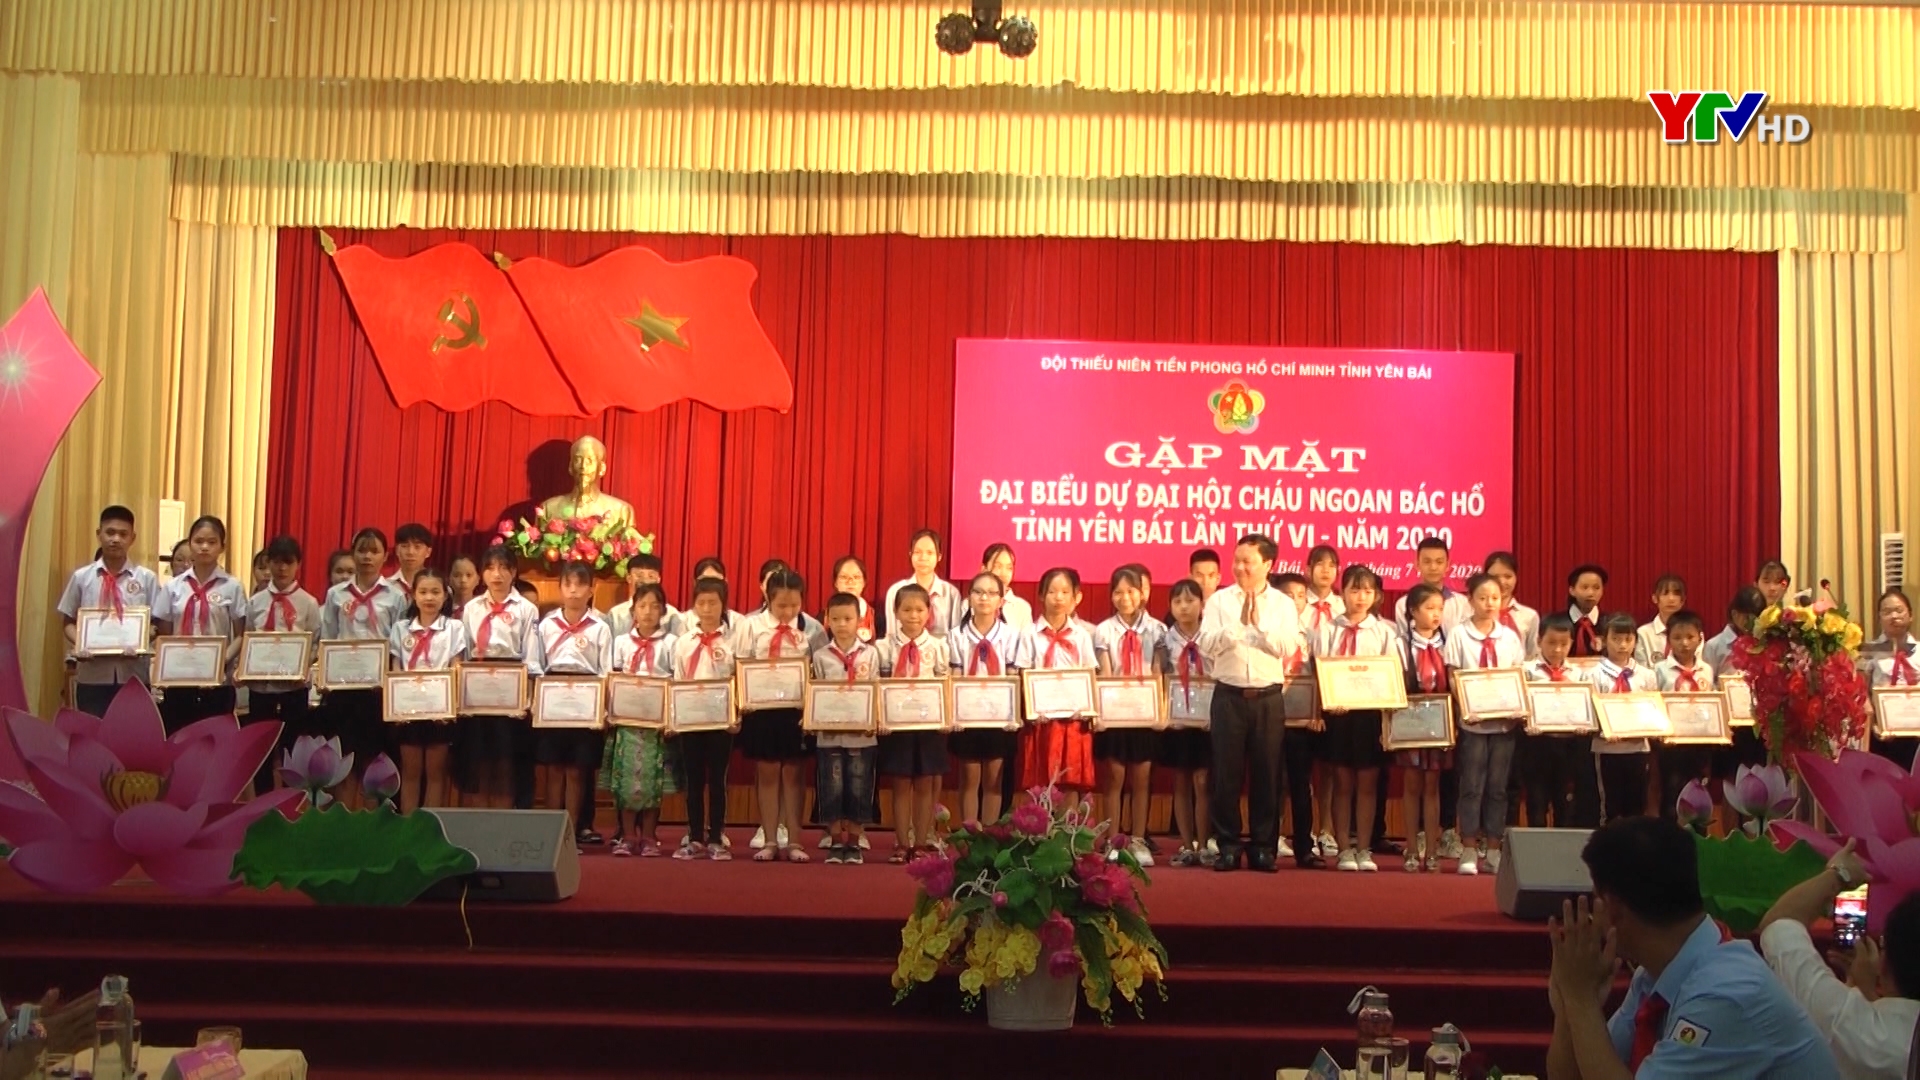 Gặp mặt đại biểu dự Đại hội Cháu ngoan Bác Hồ tỉnh Yên Bái lần thứ VI năm 2020